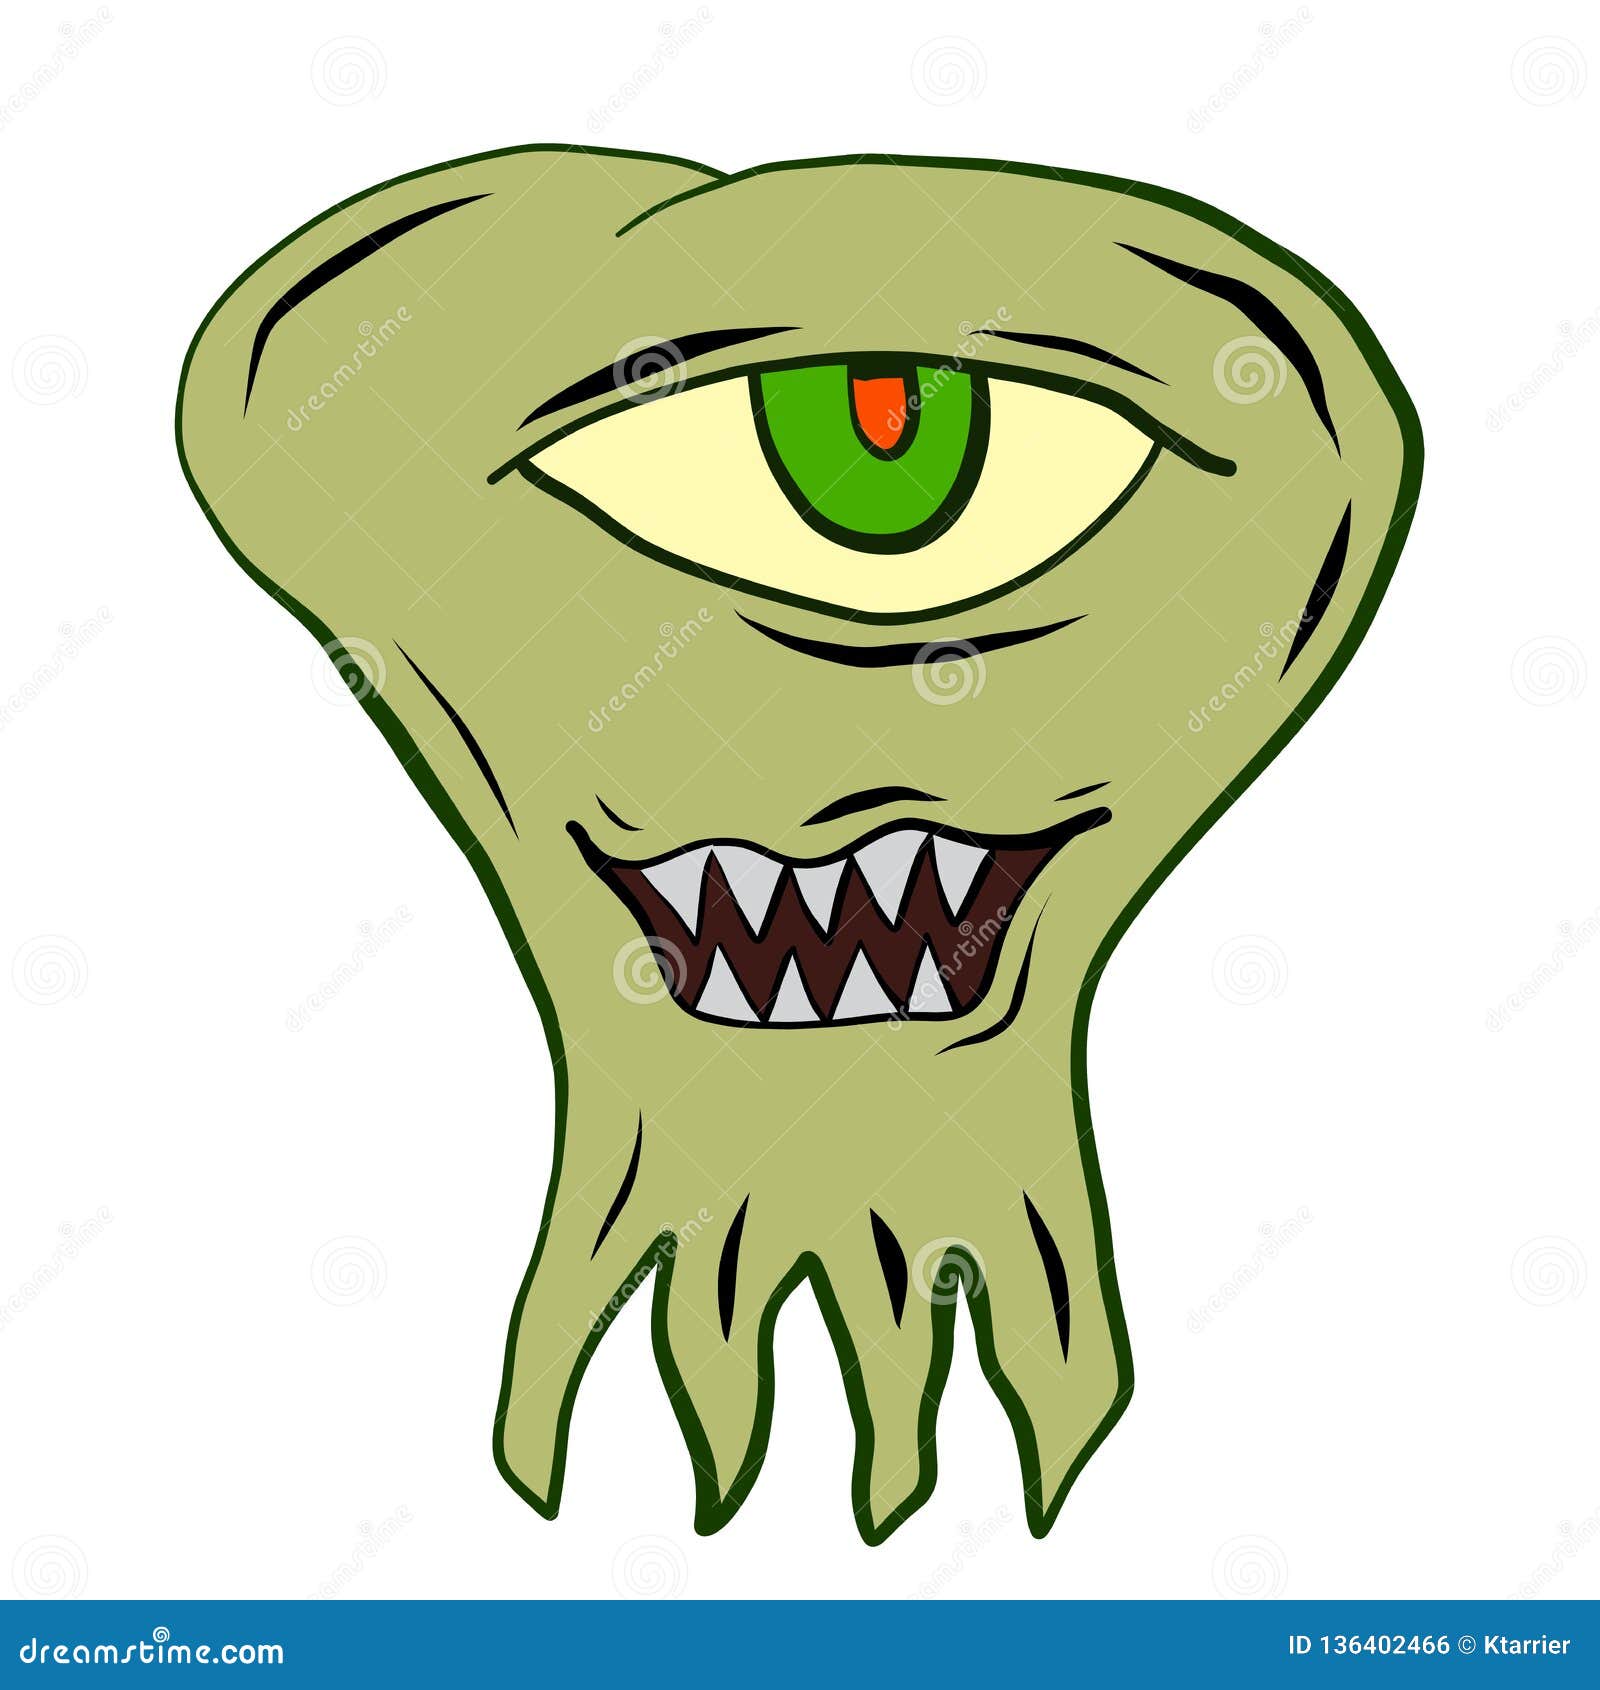 Cartoon of a Green Blob Monster Stock Vector - Illustration of undead,  fantasy: 136402466